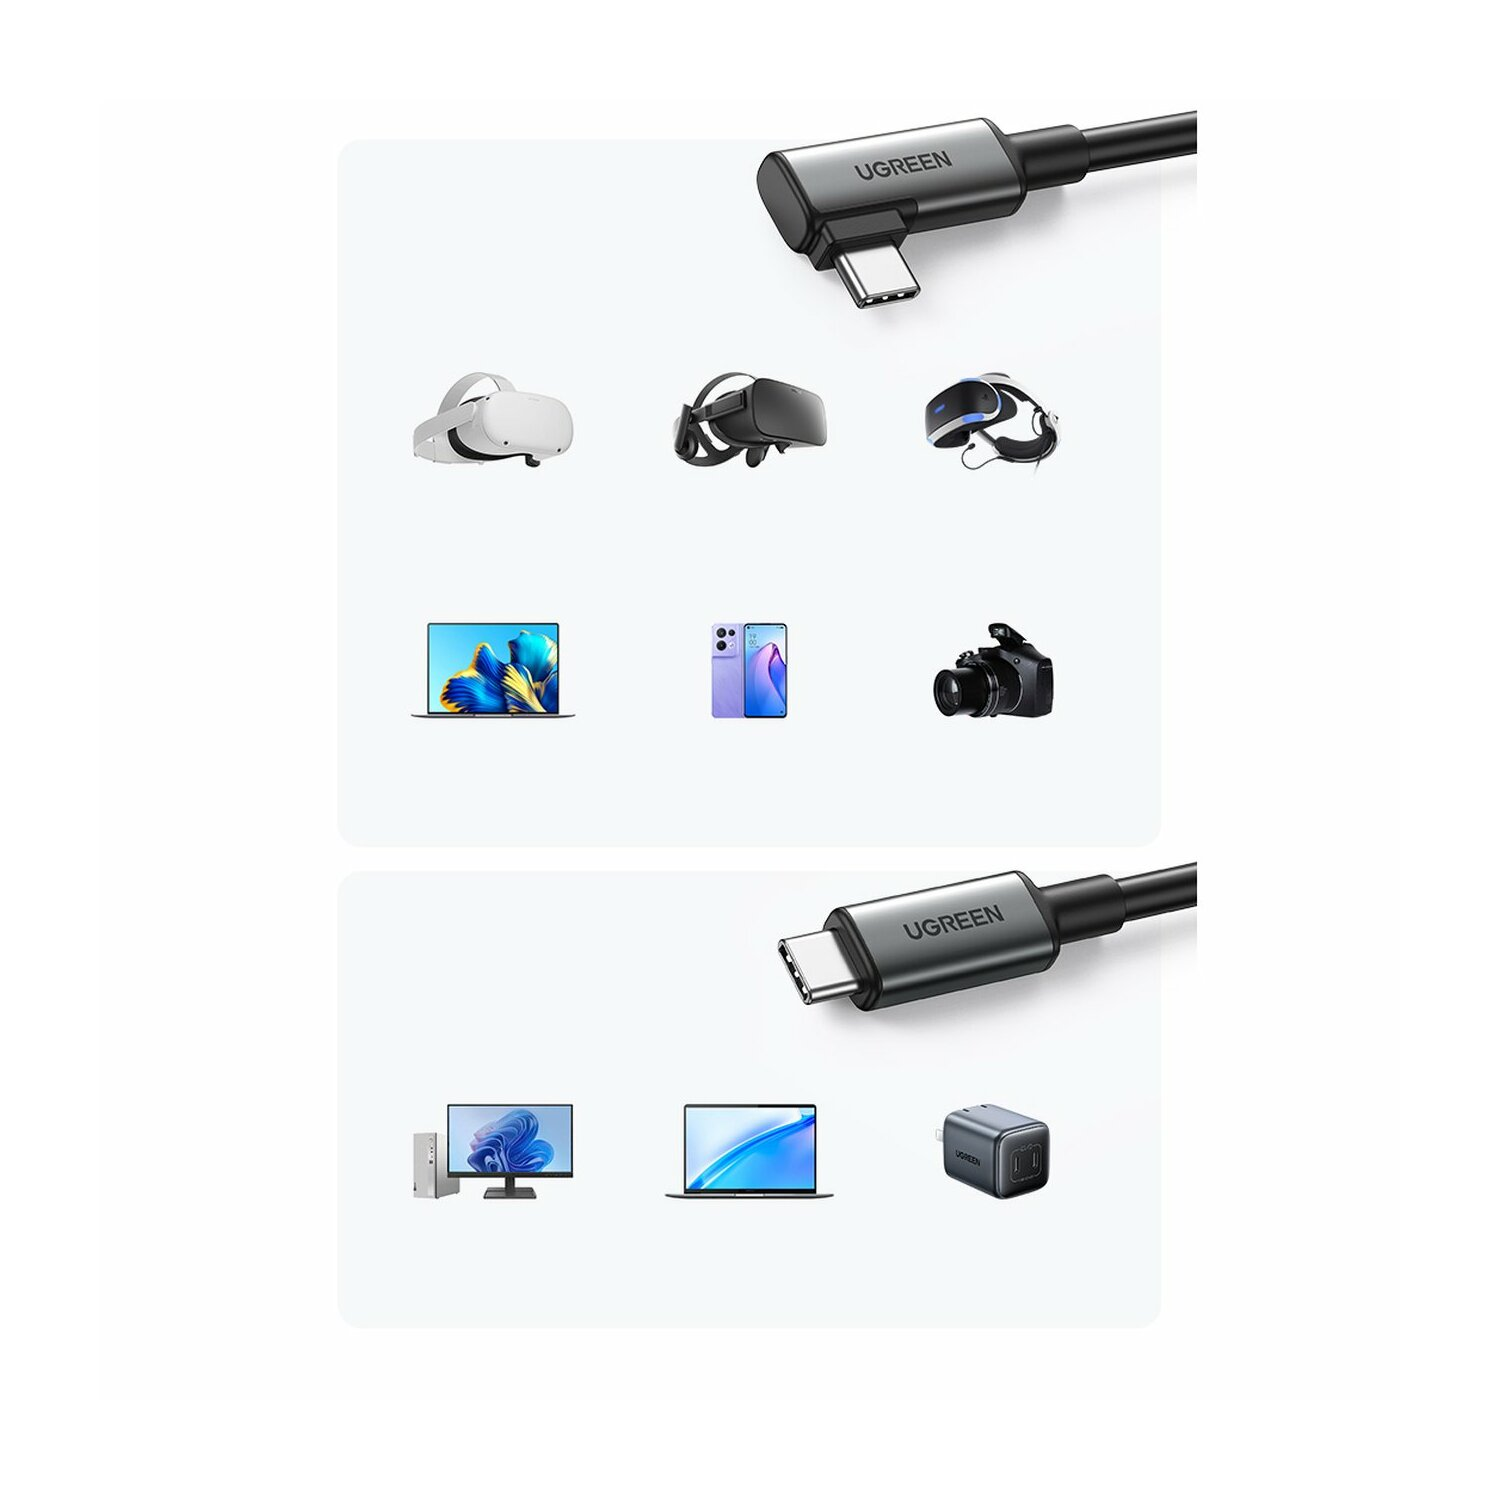 abgewinkeltes USB Ladekabel, Type C, Kabel Schwarz - C Type UGREEN USB